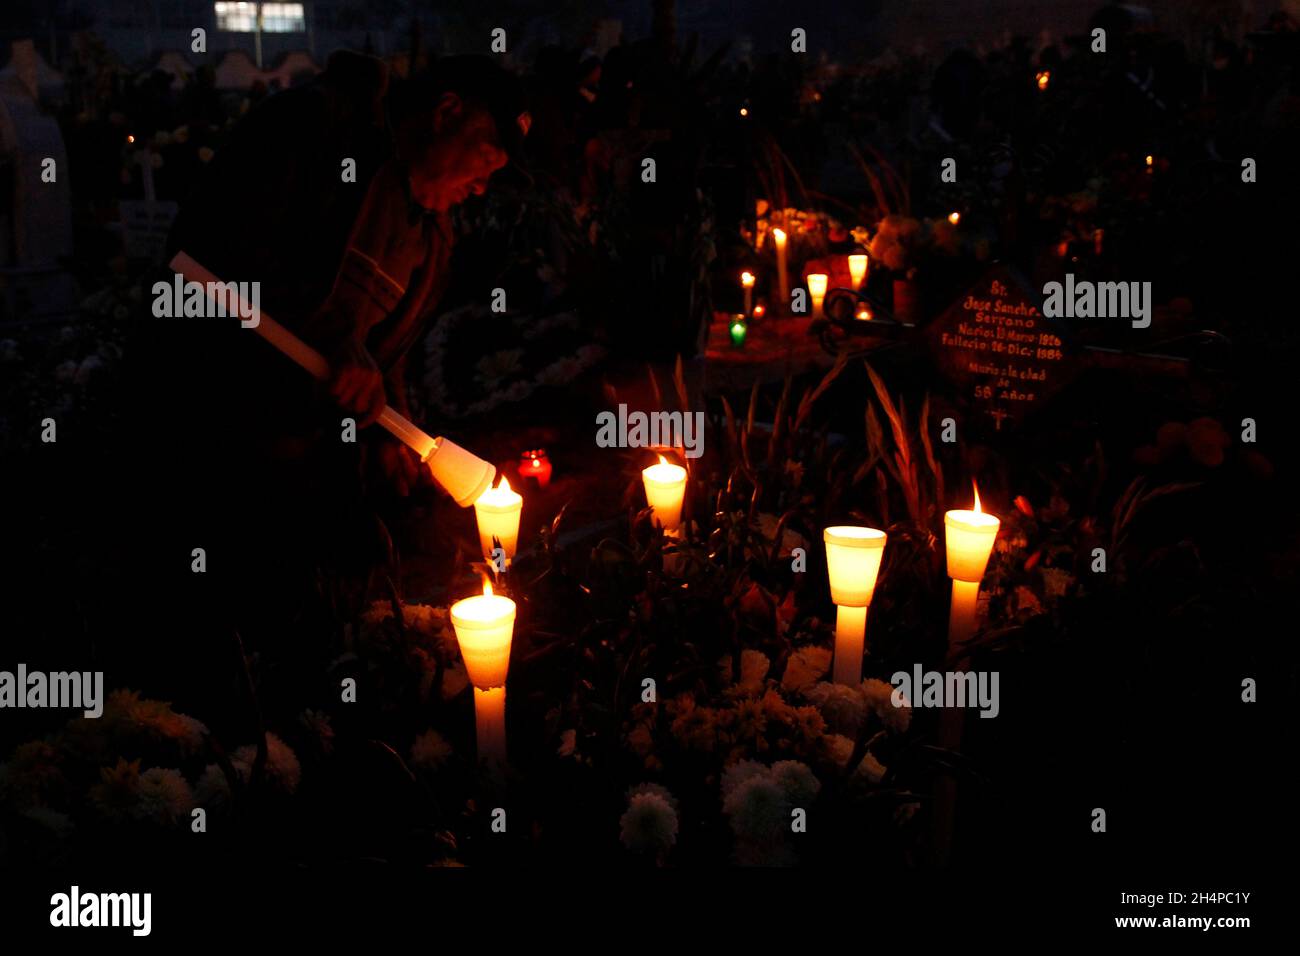 Non esclusiva: CITTÀ DEL MESSICO, MESSICO - 2 NOVEMBRE 2021: I membri della famiglia decorano e illuminano le tombe dei loro cari che riposano nel San Andrés Mixq Foto Stock